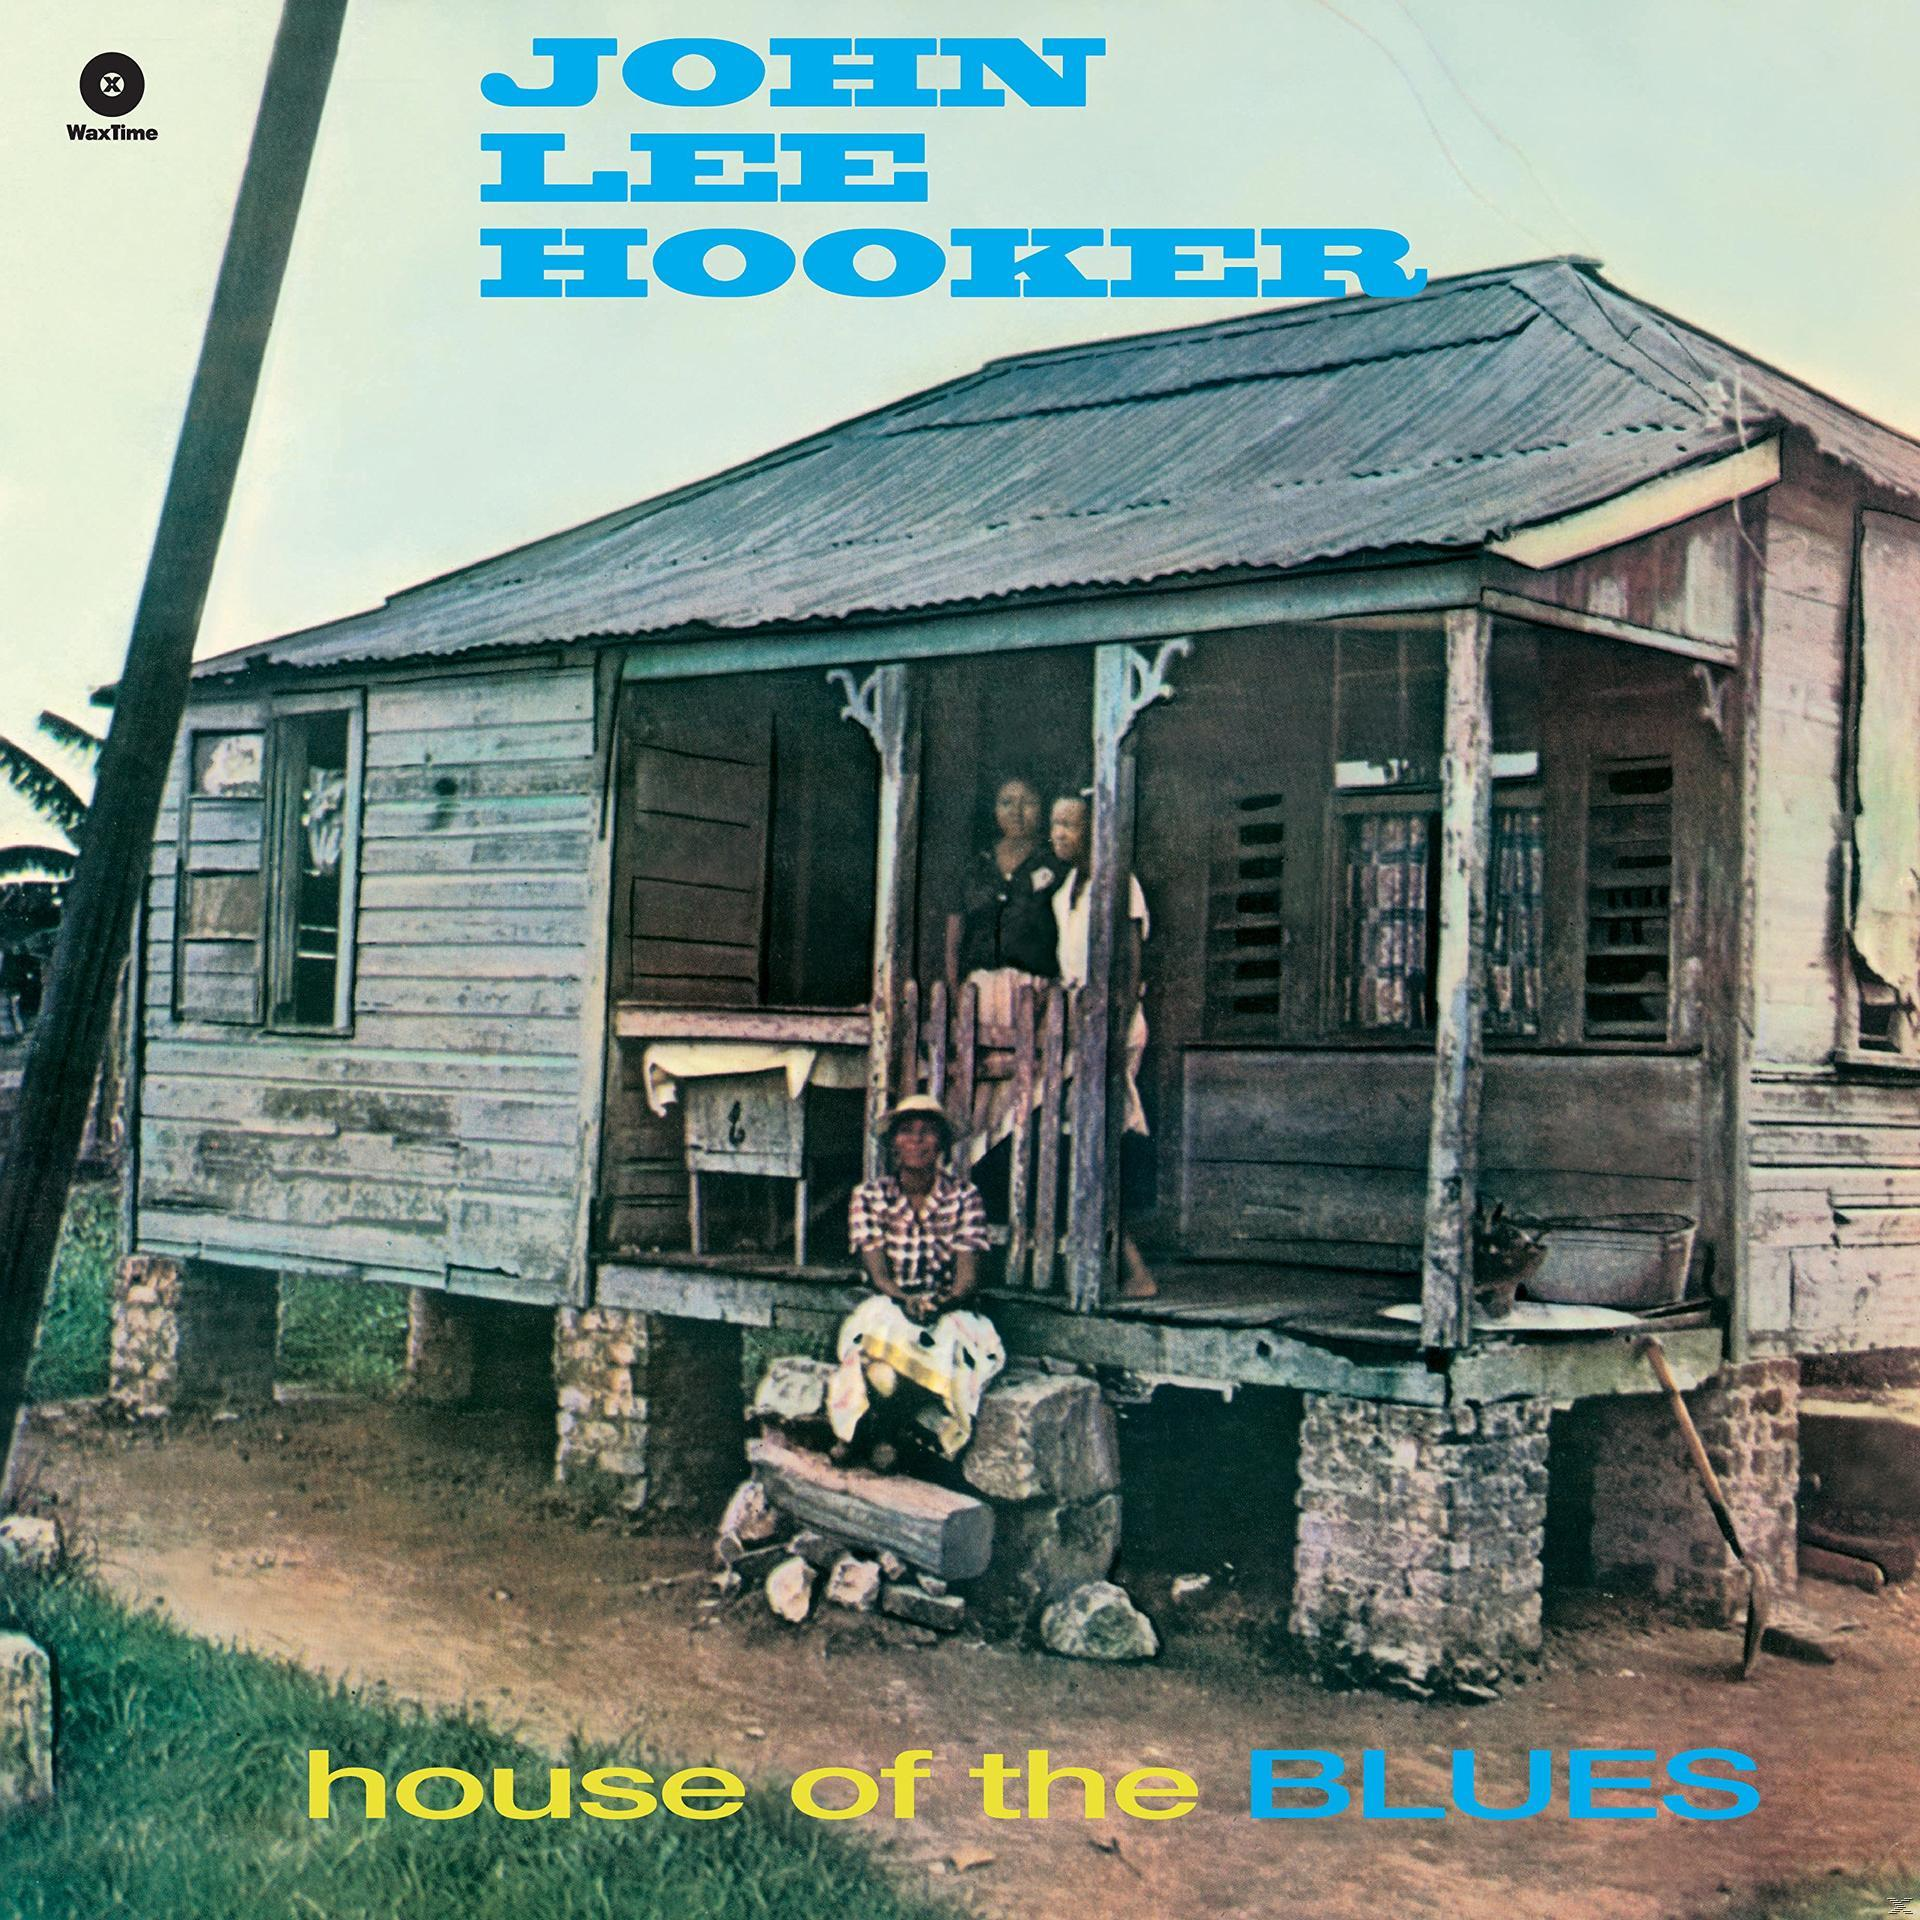 Lee Of Blues+2 Tracks The - Hooker 180 Bonus John - (Vinyl) House (Ltd.Edt